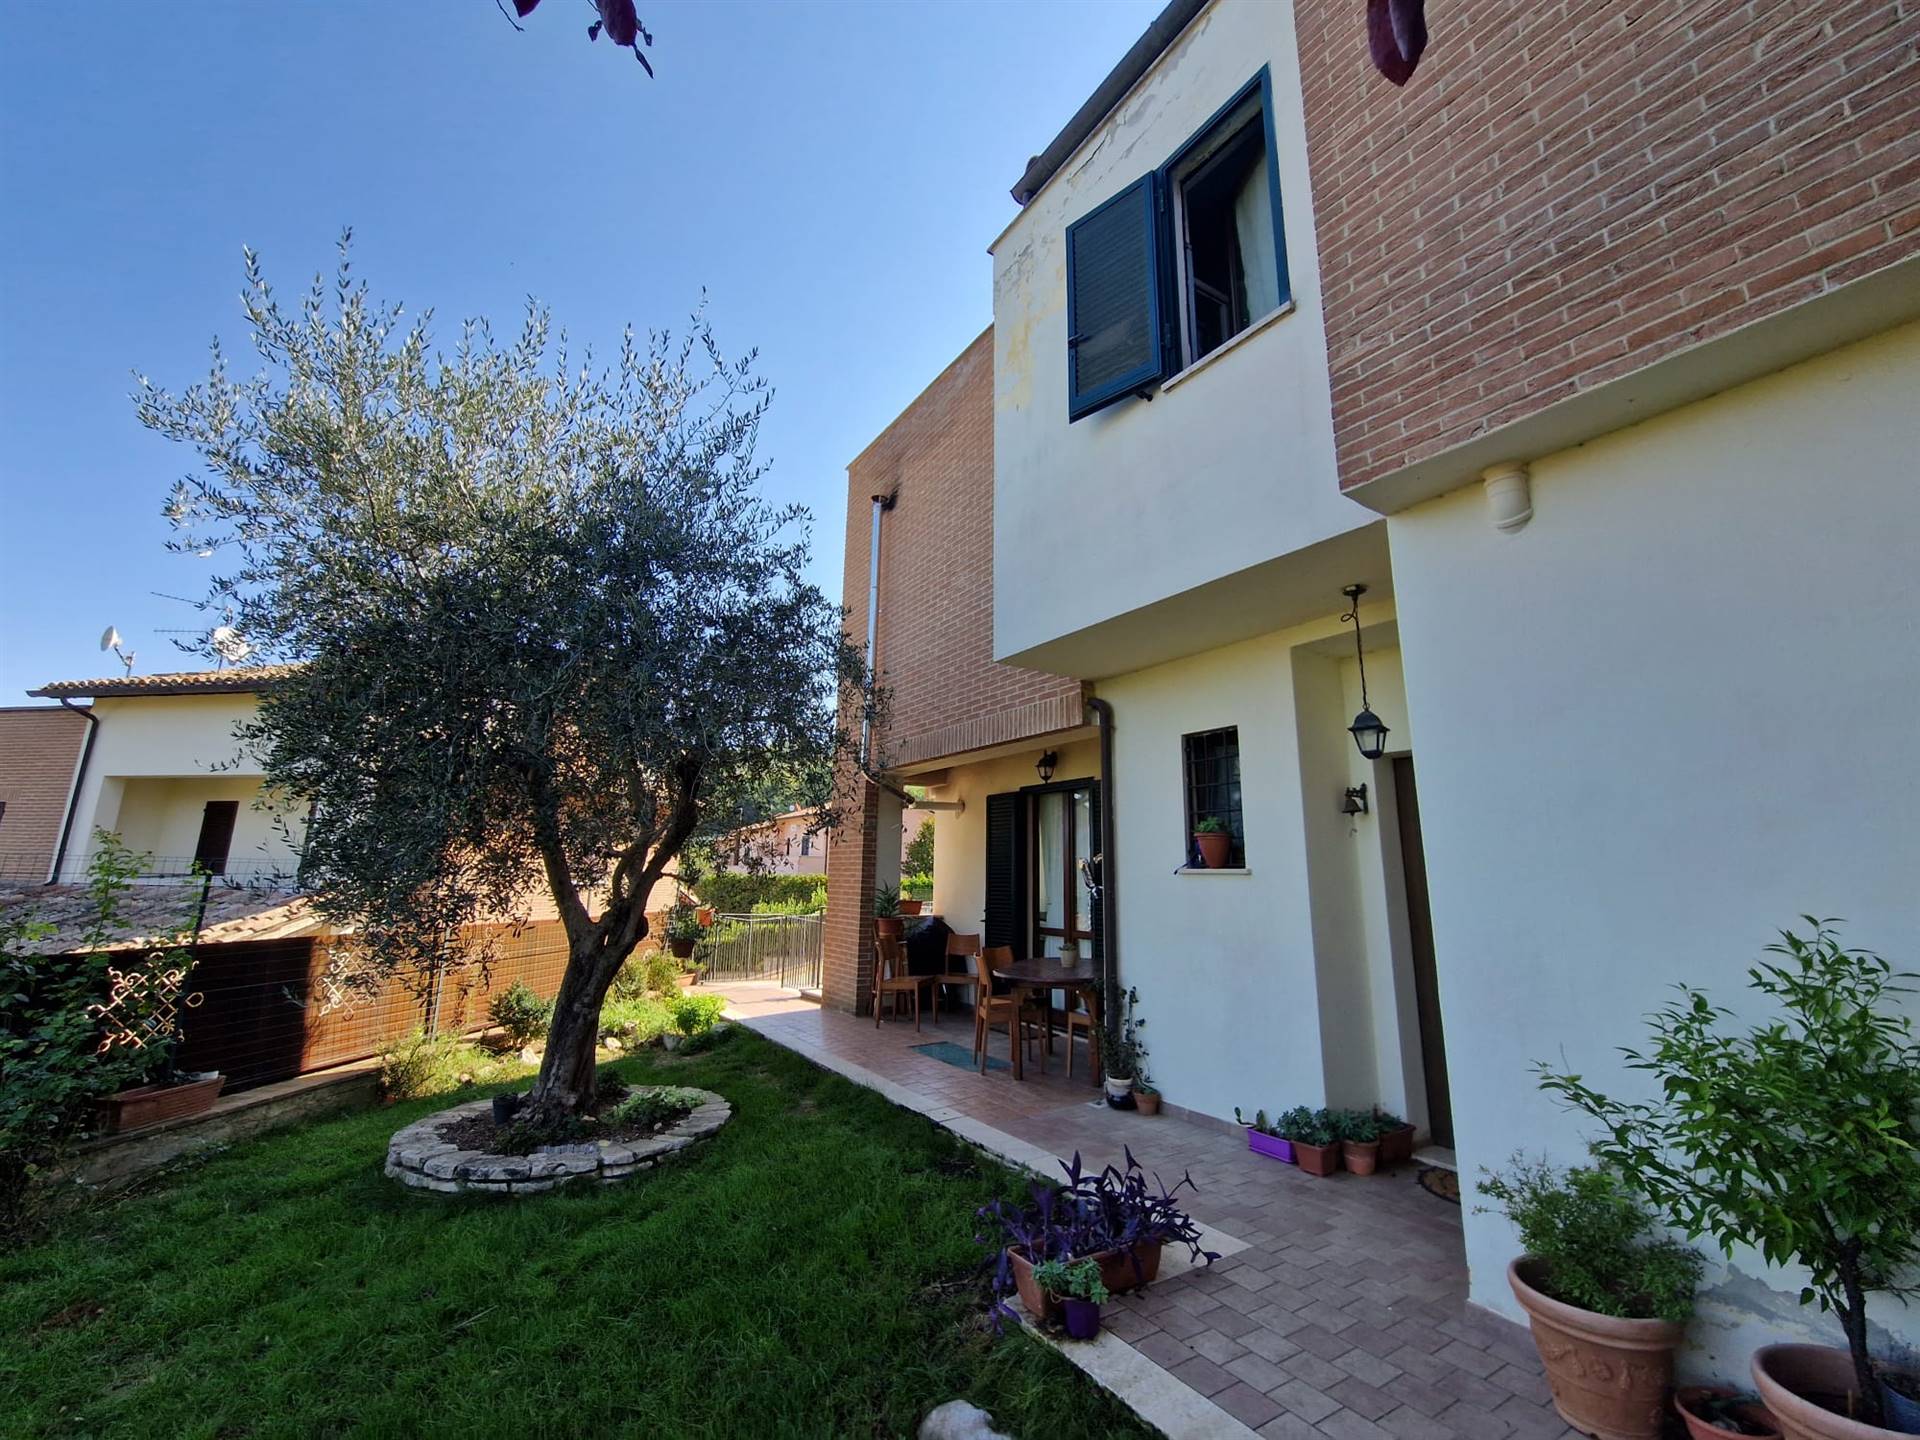 Villa Bifamiliare in vendita a Spoleto, 4 locali, zona Località: PRIMA PERIFERIA, prezzo € 275.000 | PortaleAgenzieImmobiliari.it